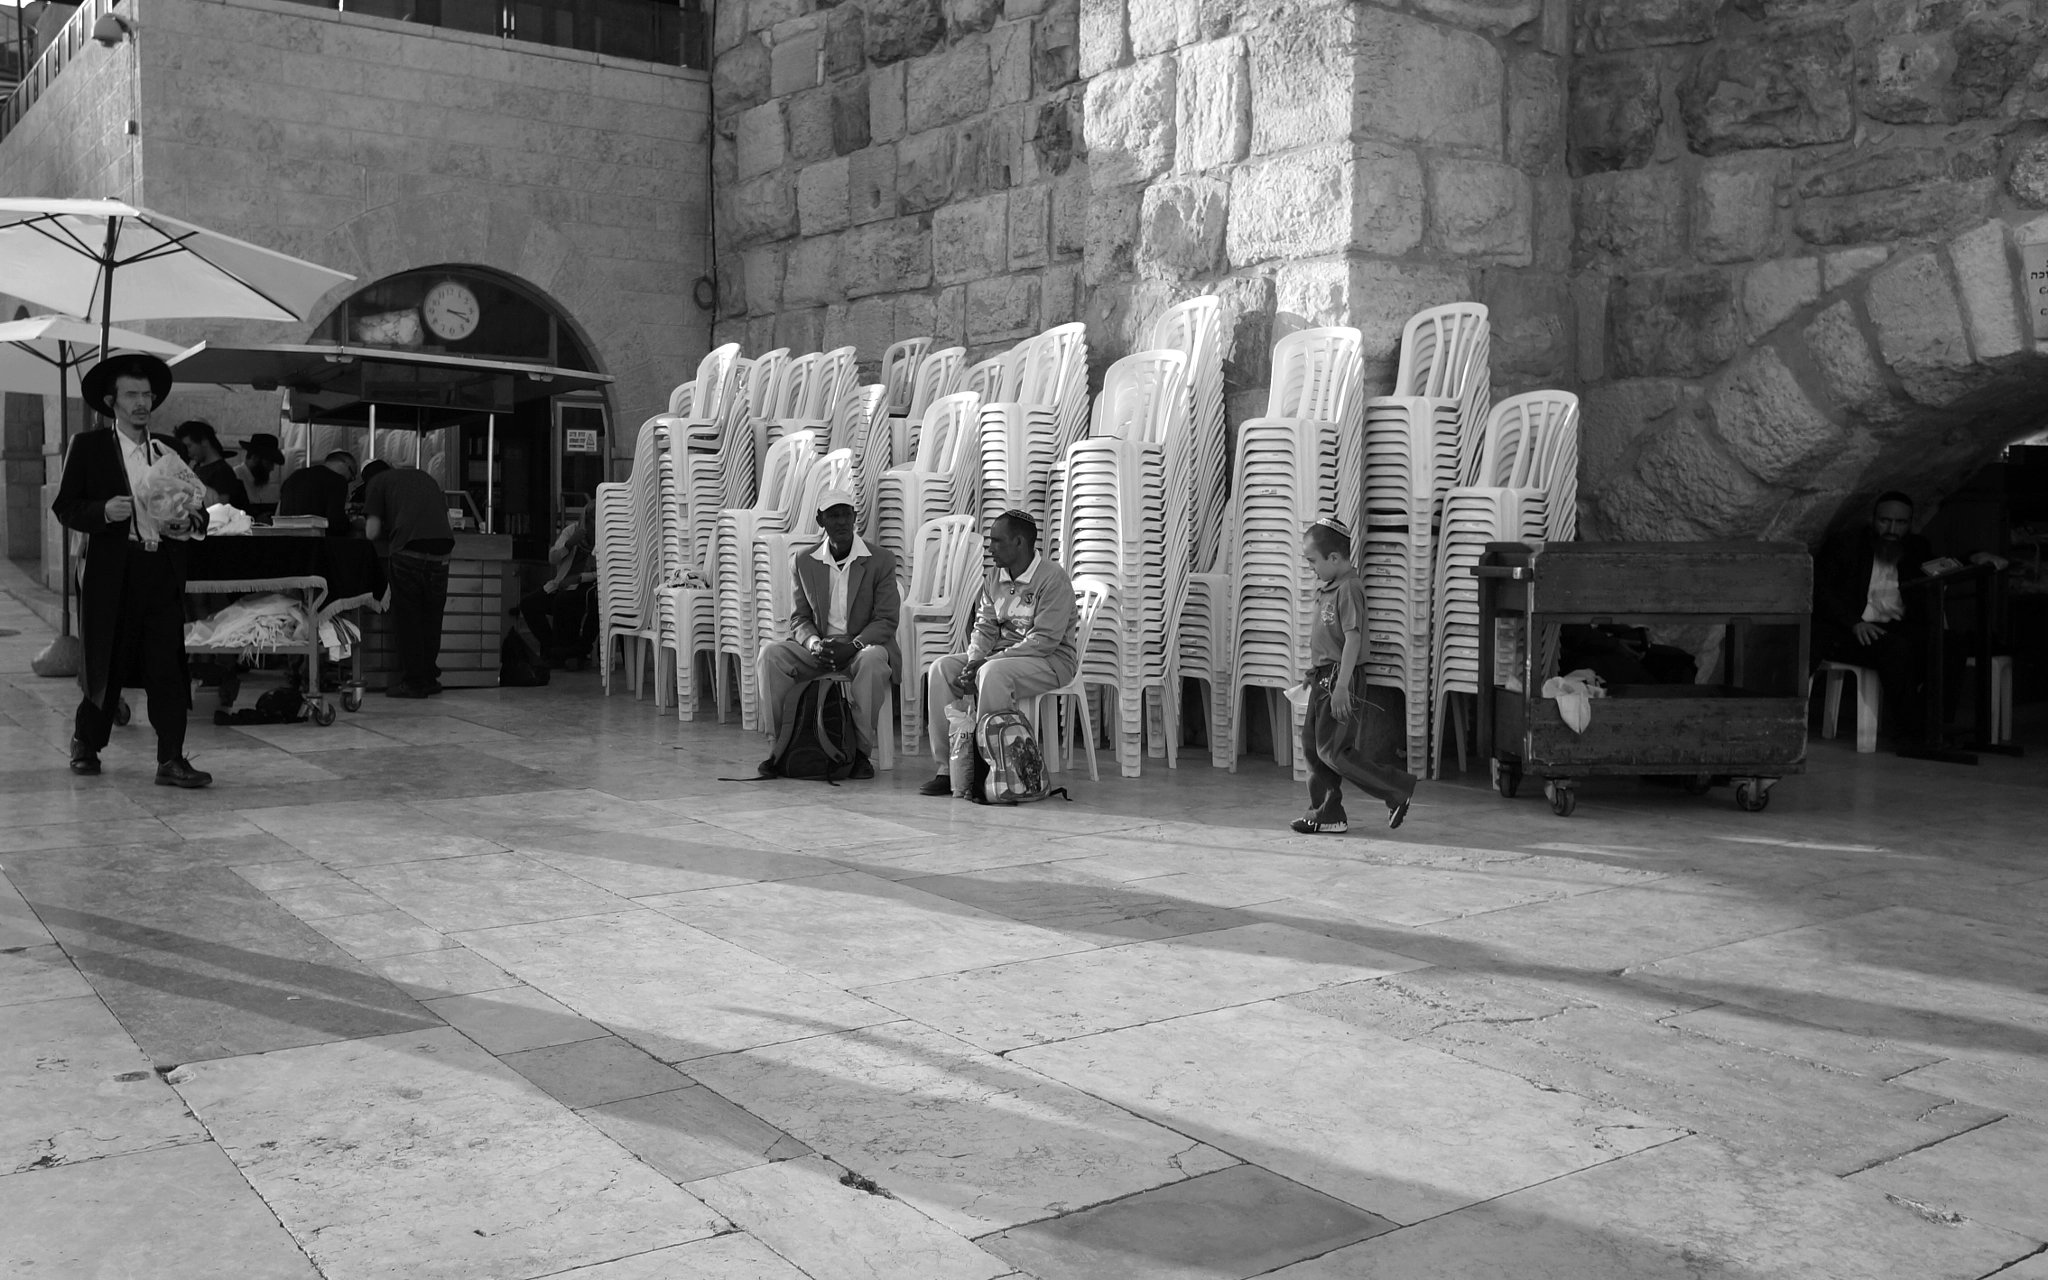 Sony Alpha NEX-F3 sample photo. Jerusalem. photography